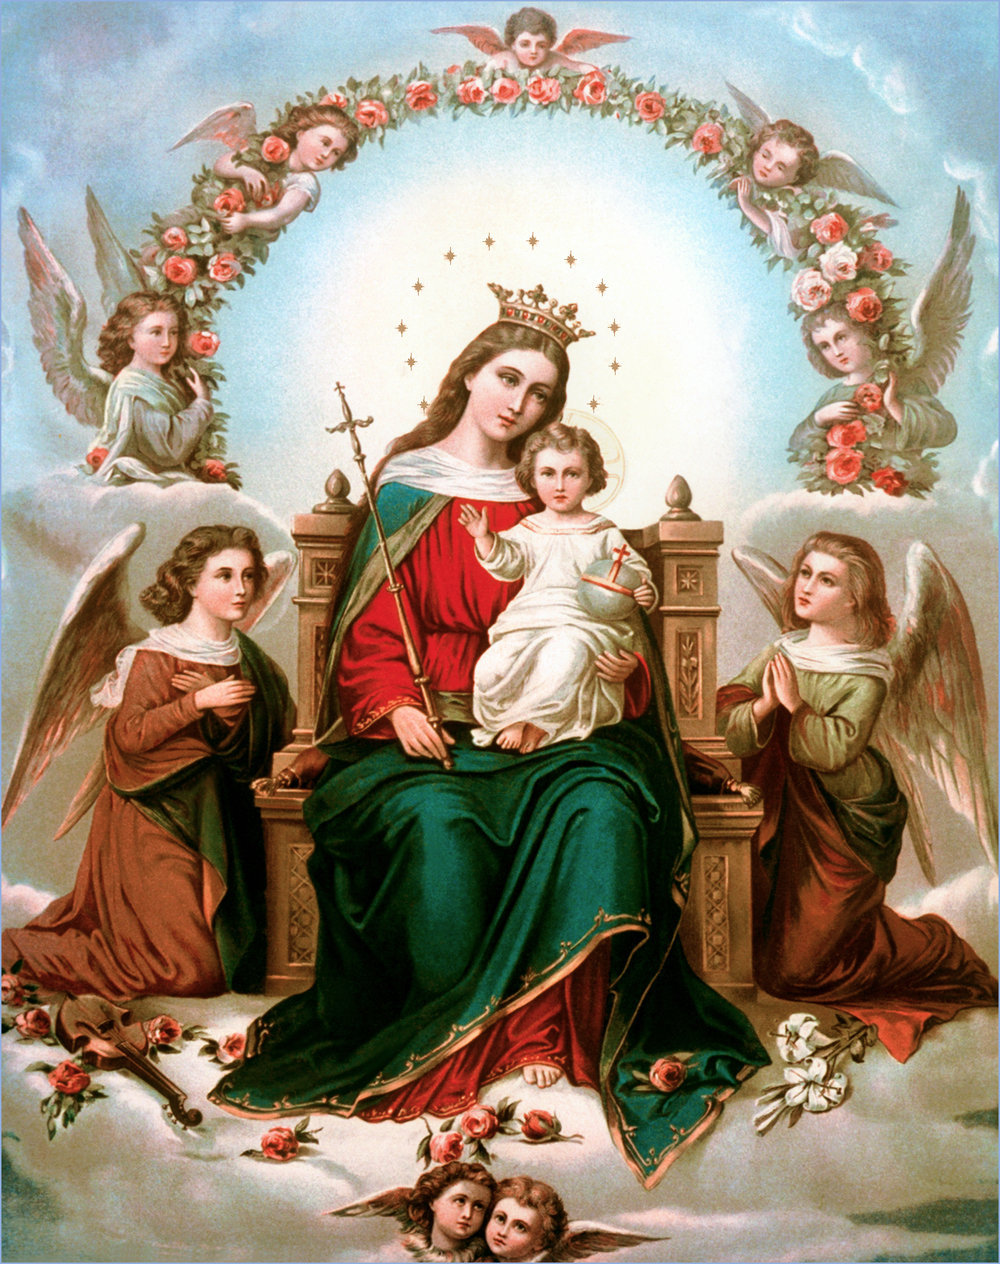 Resultado de imagen de imagenes catolicas de la virgen maria